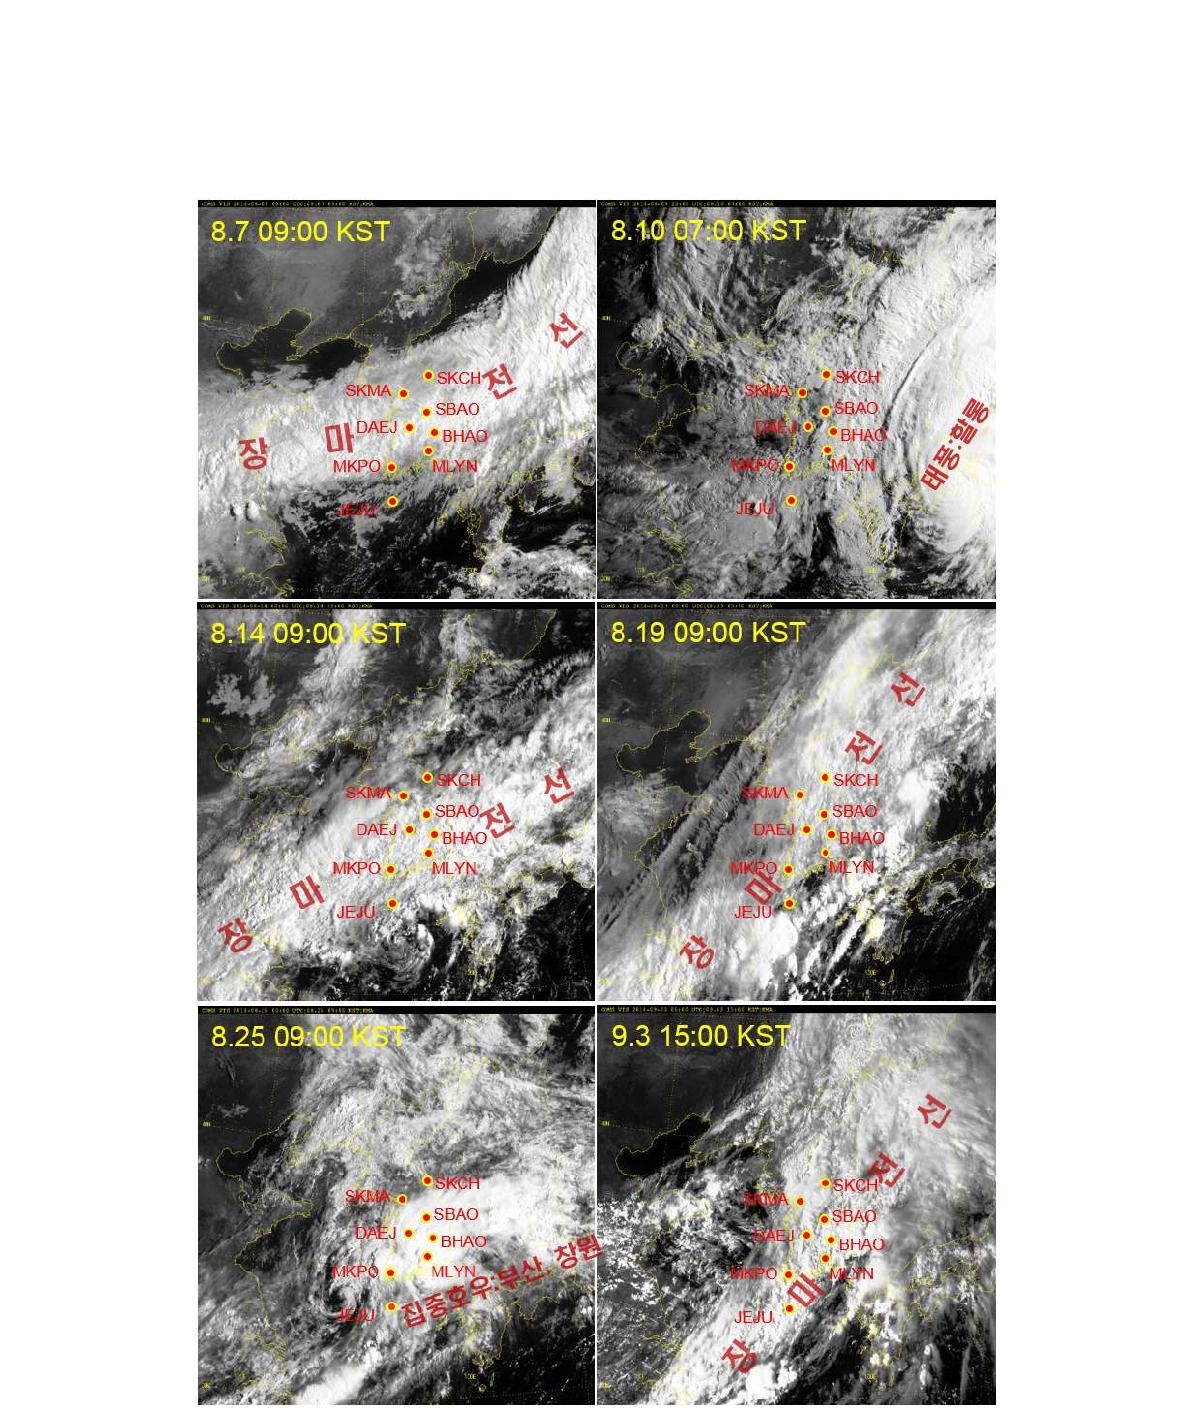 시험 기간 중 기상 이슈가 있었던 시각의 천리안 위성에서 찍은 한반도 구름 사진. 전국이 늦은 장마의 영향을 받던 시기이다.